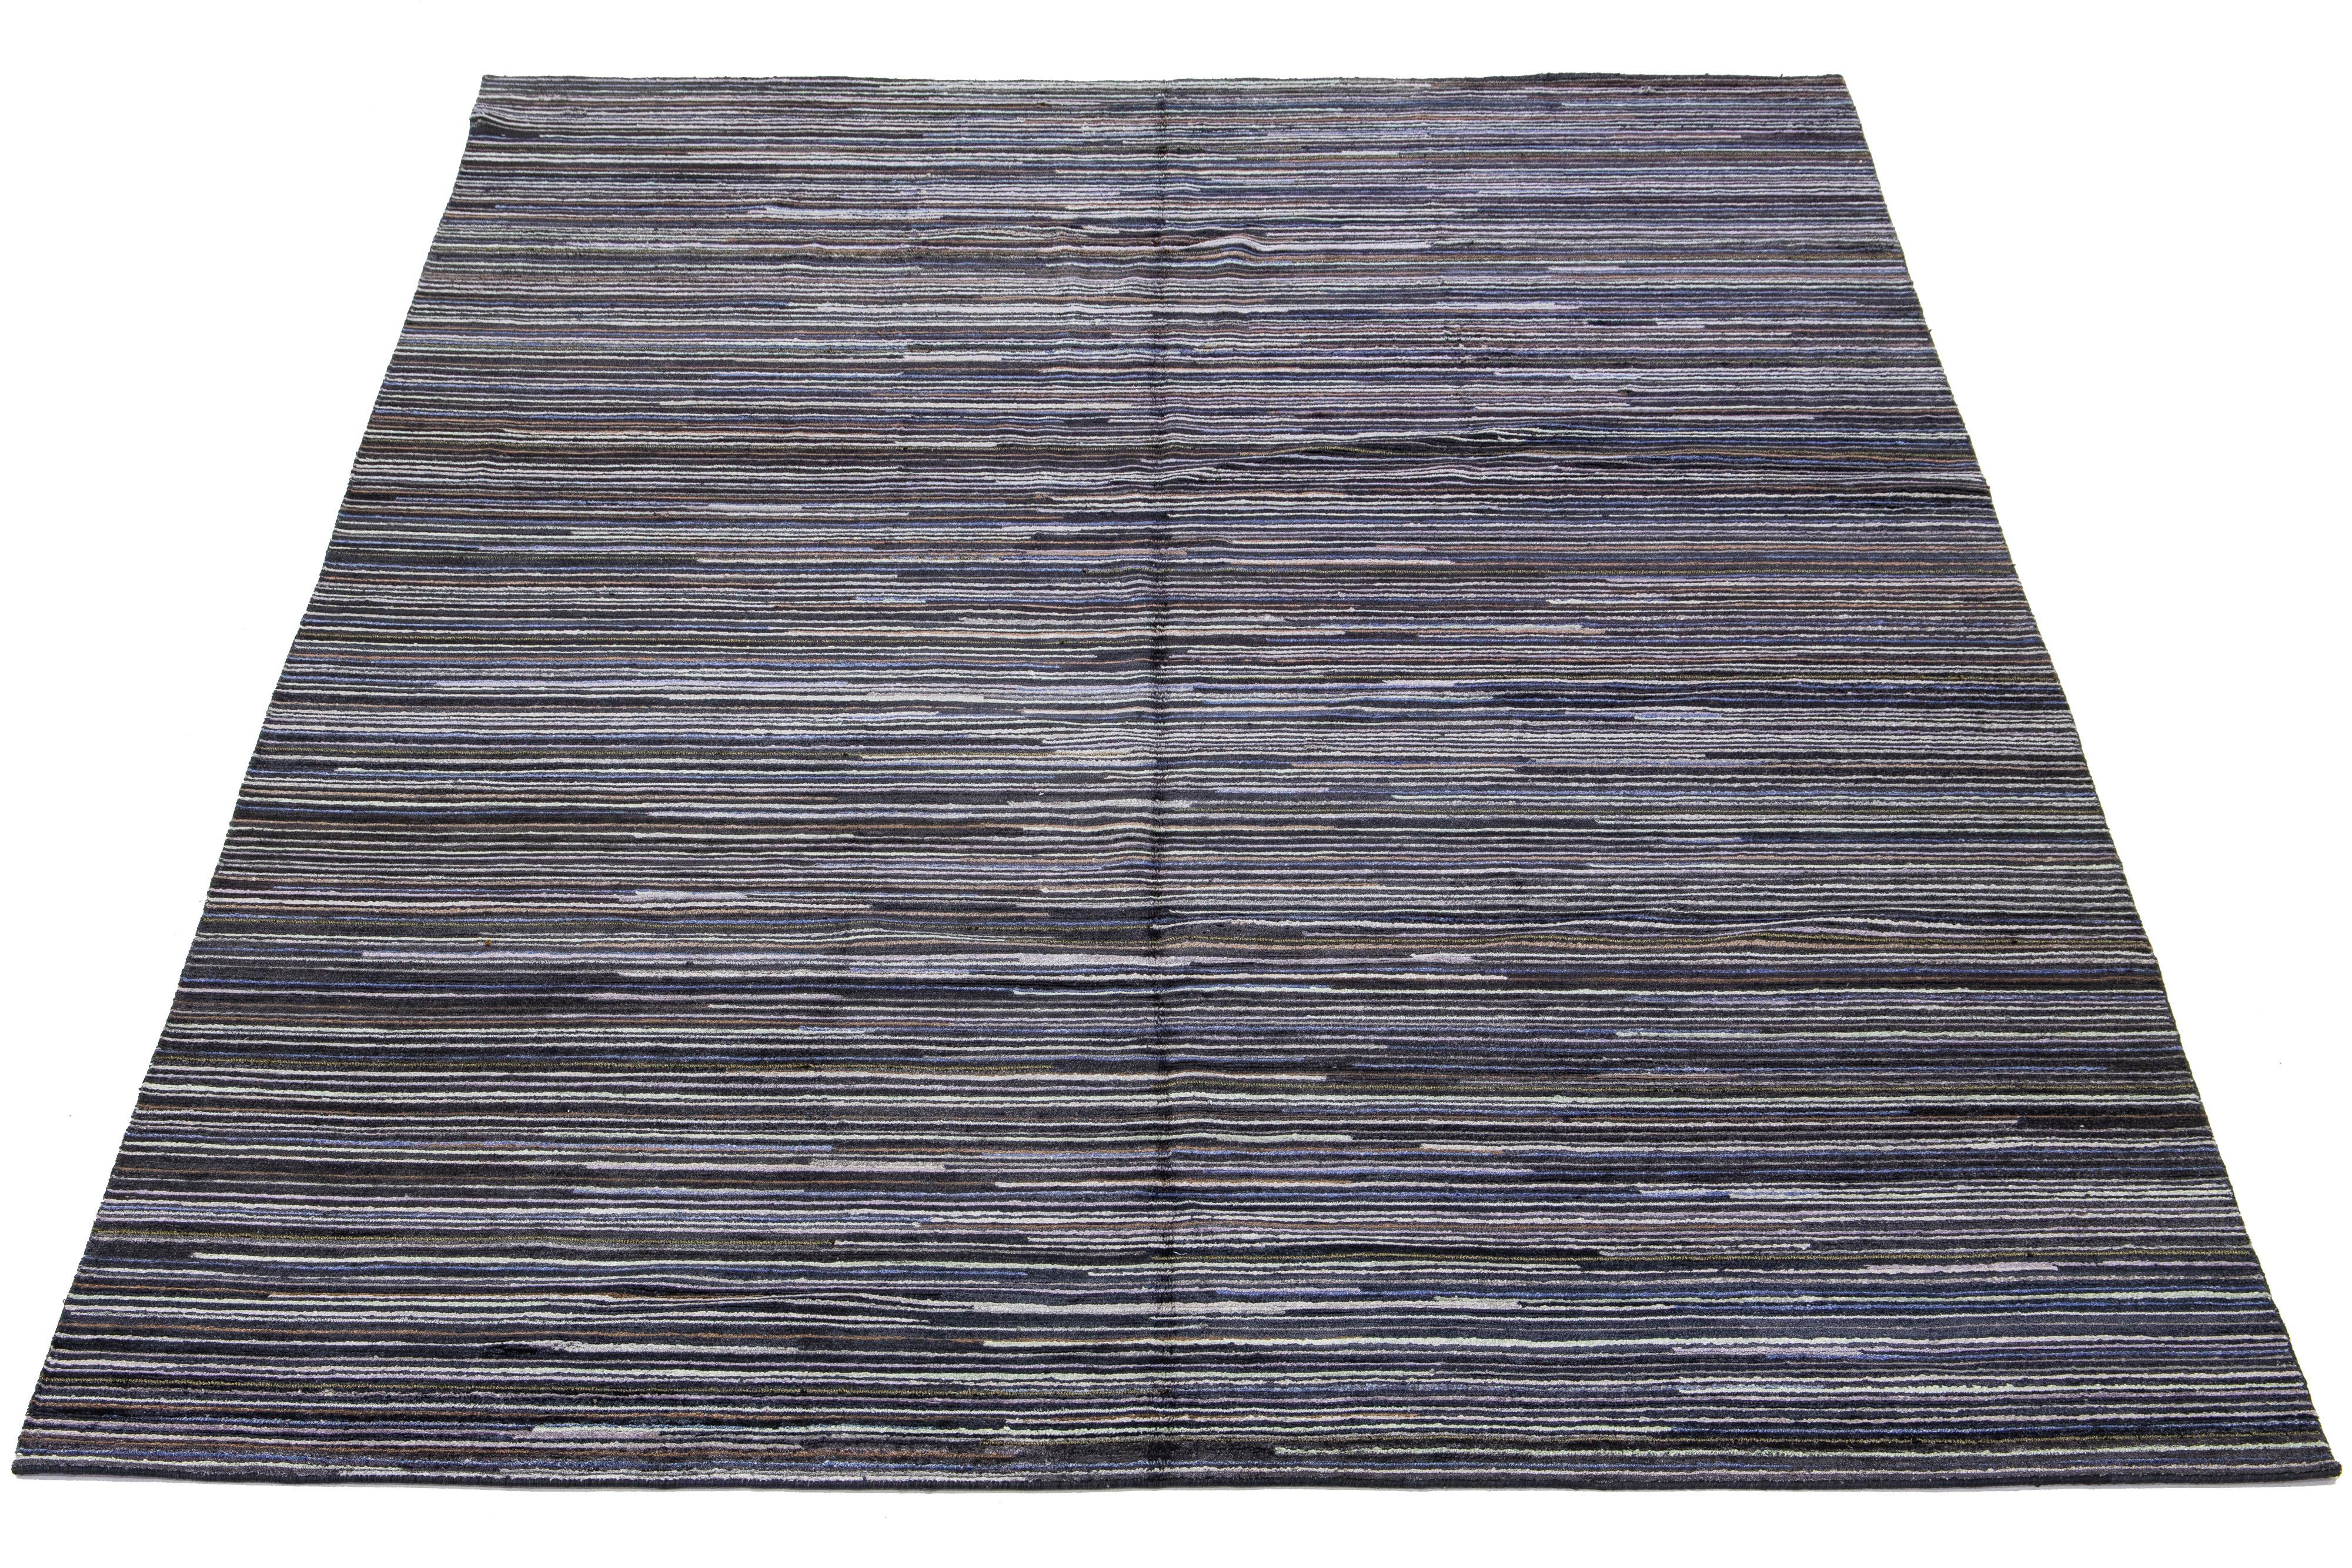 Ce tapis indien noué à la main est en laine et présente une esthétique rayée captivante avec des accents multicolores. Elle présente un fond gris et noir aux teintes naturelles.

Ce tapis mesure 10' x 14'4